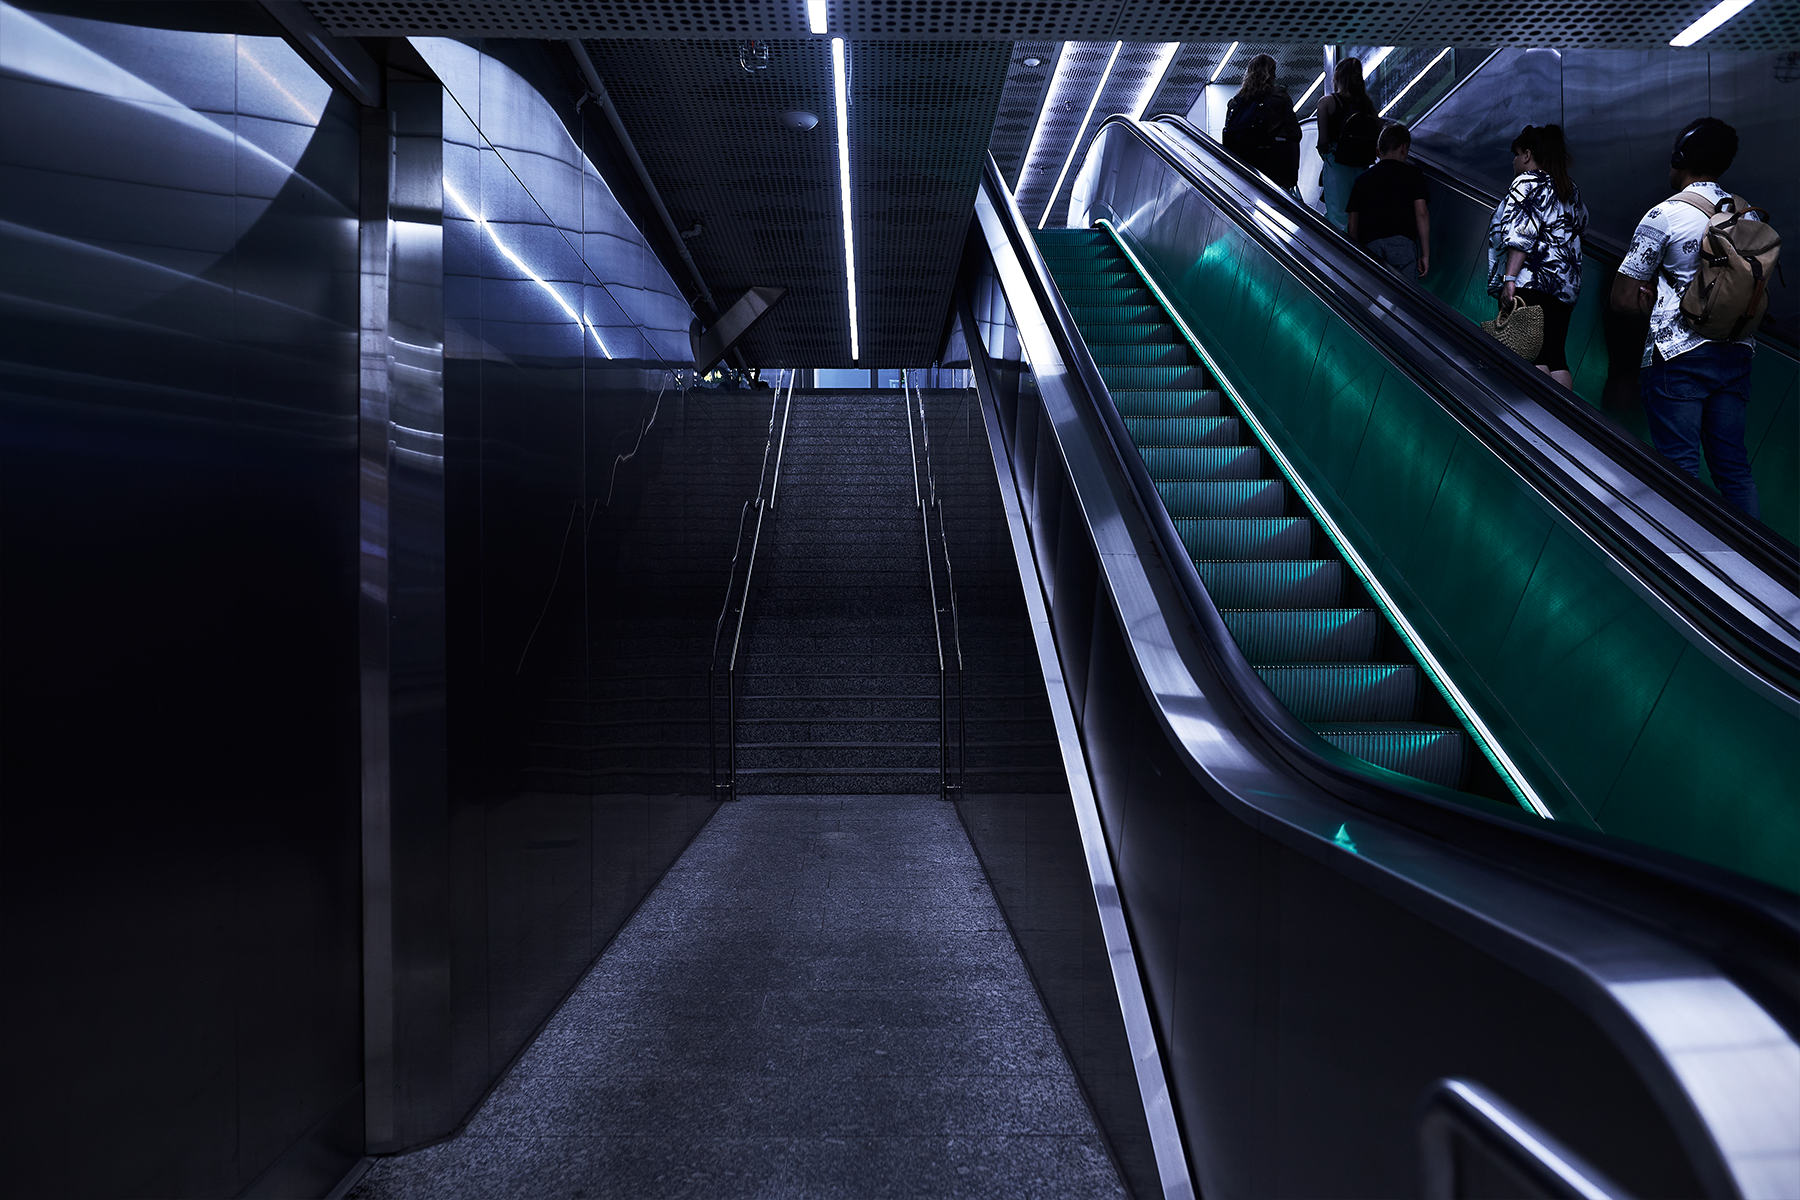  Illustration, mörk blå och grön bild av rulltrappor.